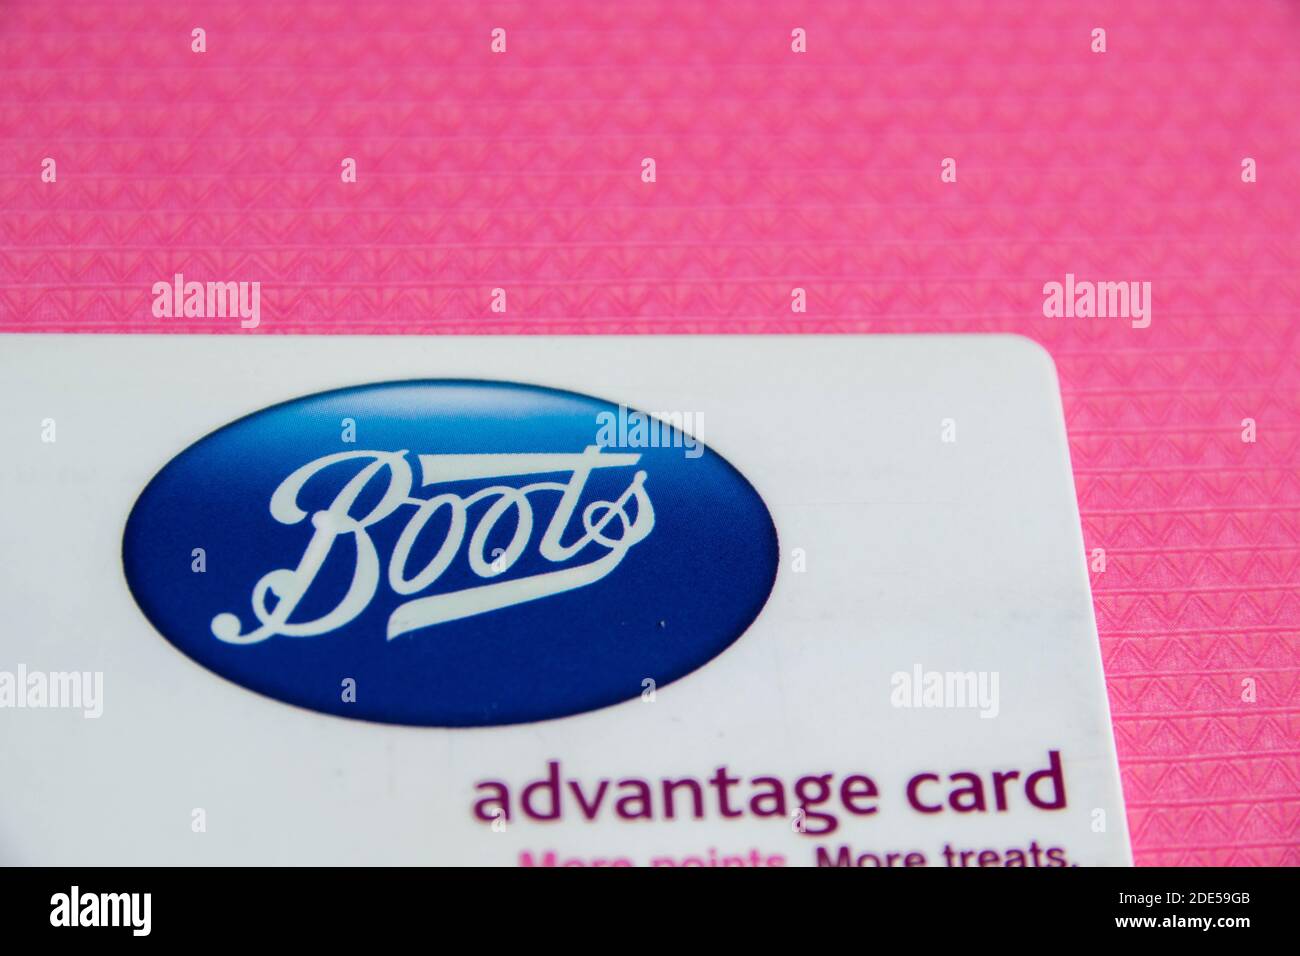 Durham, Royaume-Uni - 7 mai 20 : carte d'avantage Boots sur fond de motif. Les clients collectent des points sur leurs achats à dépenser en magasin. Carte de fidélité. Détaillant au Royaume-Uni Banque D'Images